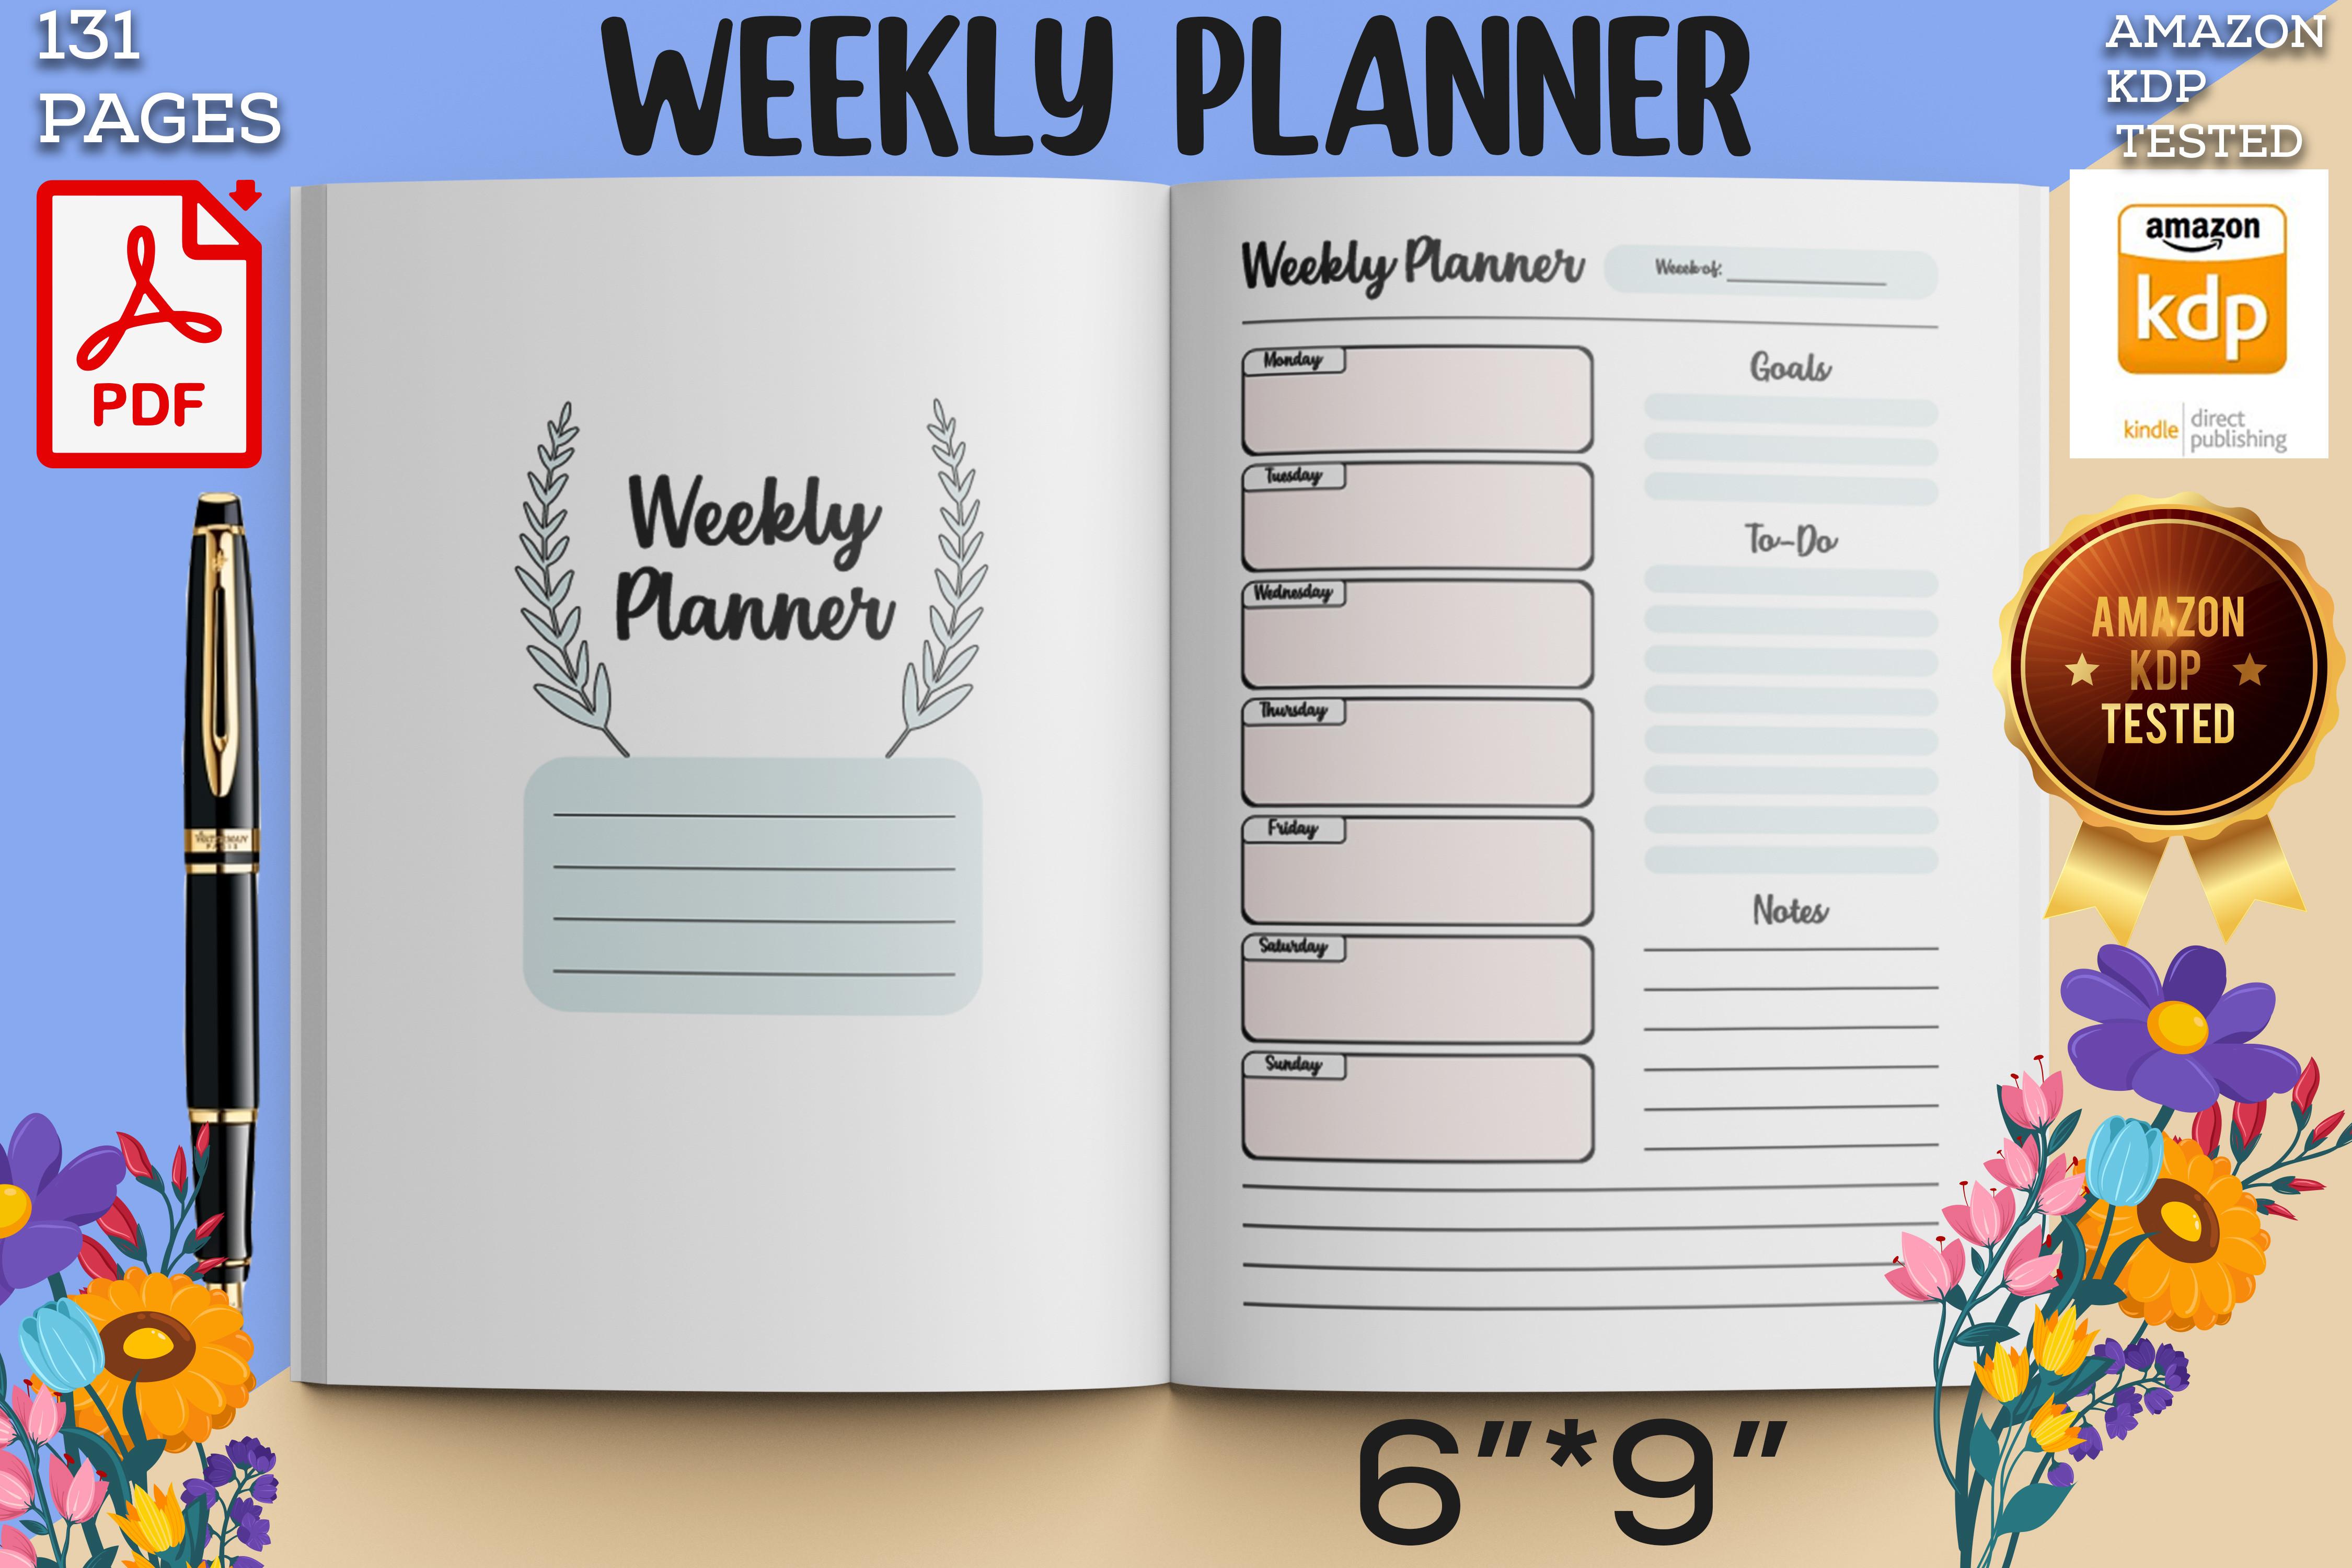 Weekly Planner Log